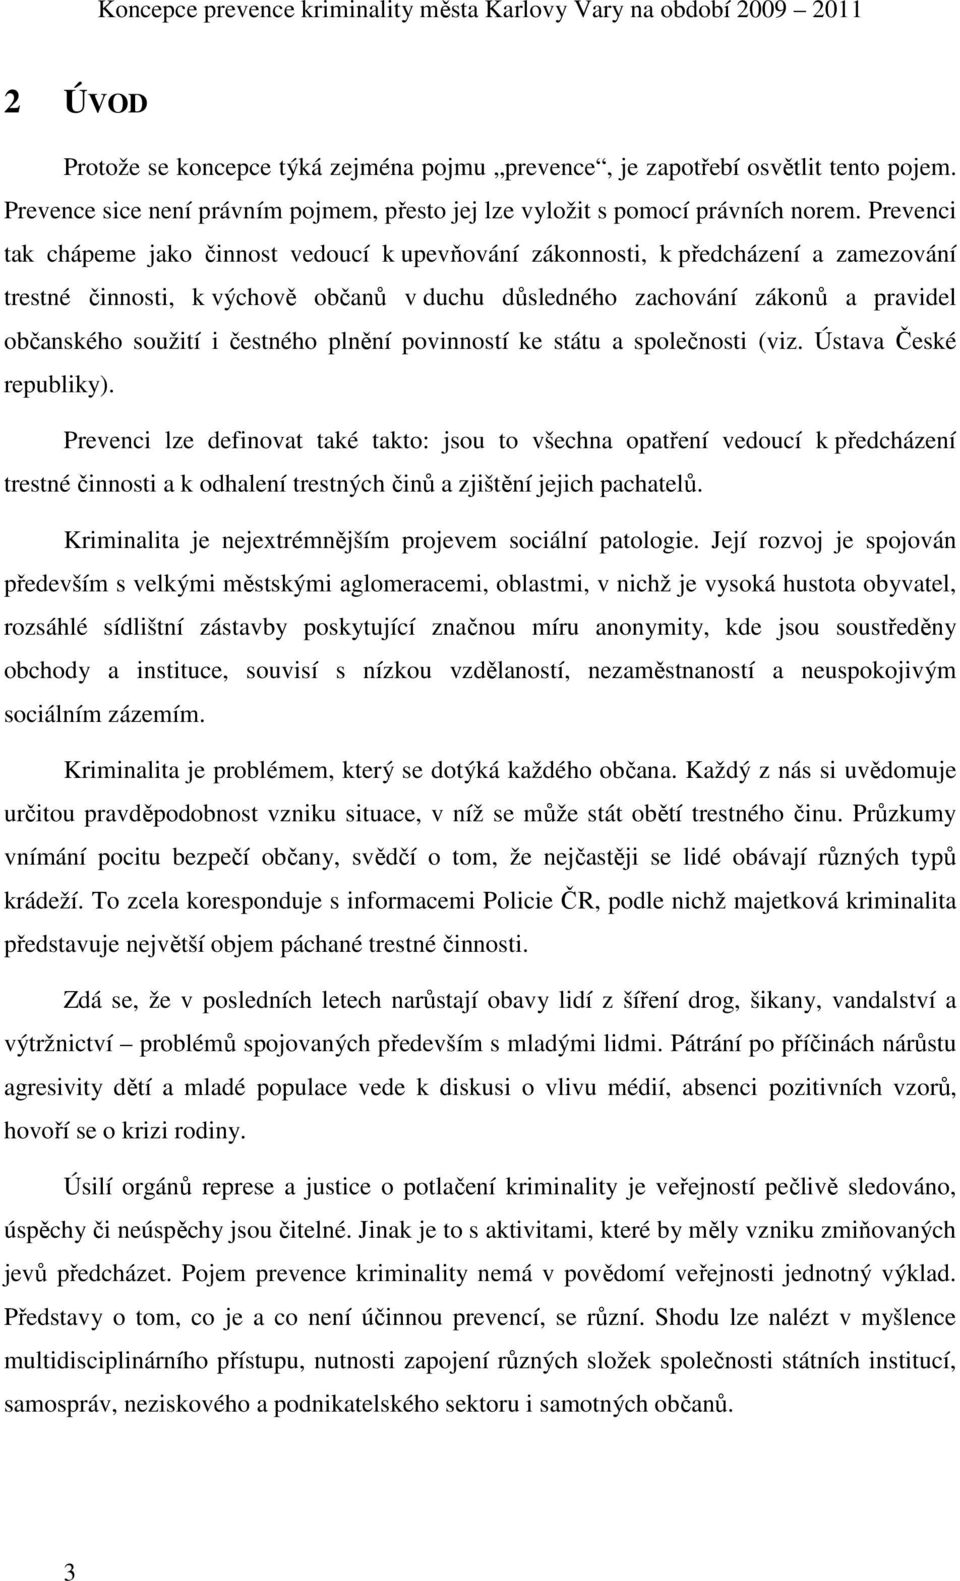 čestného plnění povinností ke státu a společnosti (viz. Ústava České republiky).